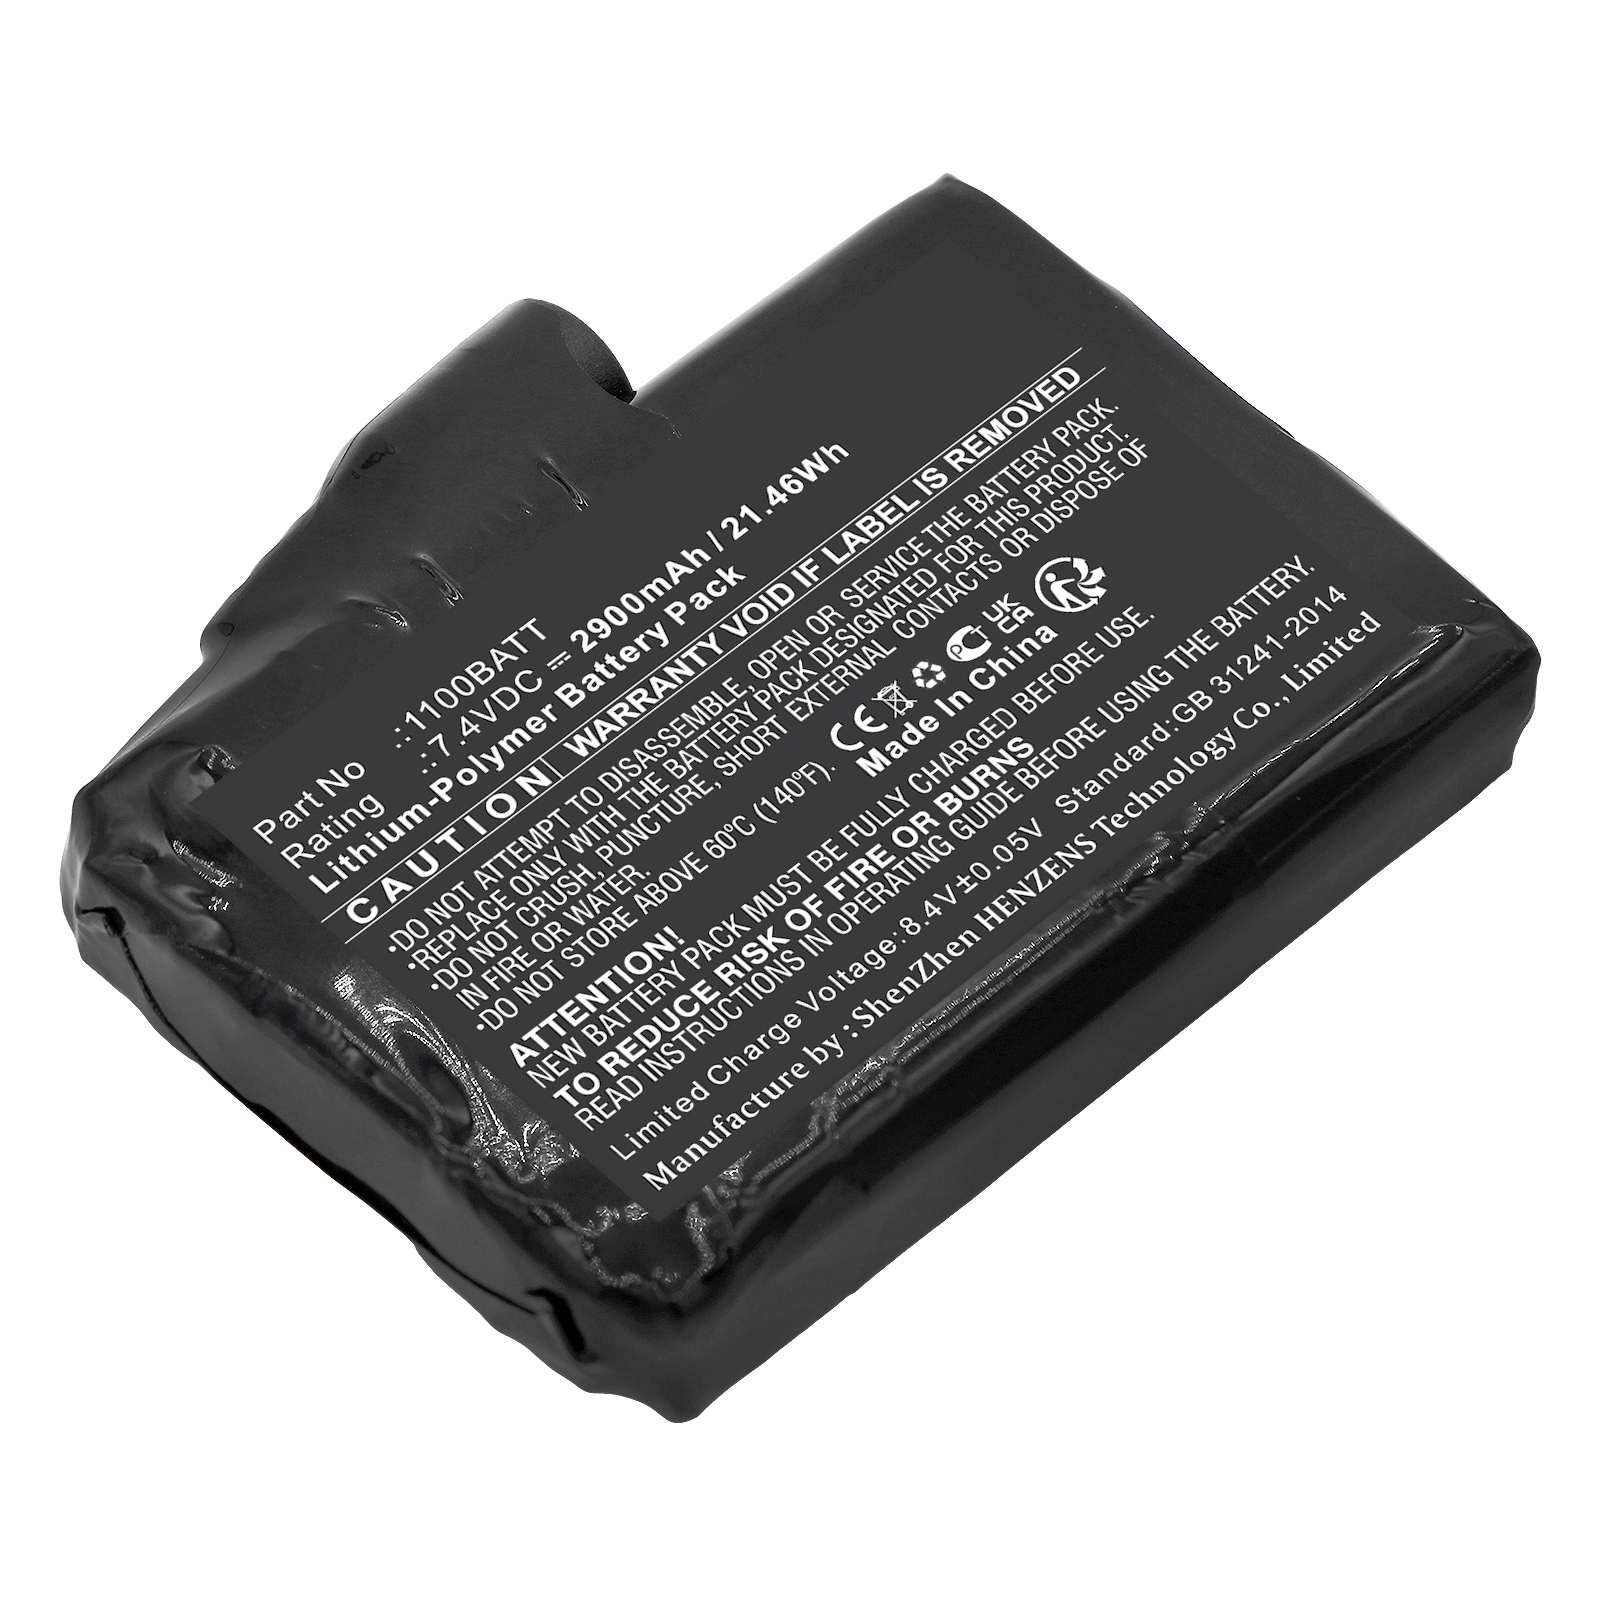 Synergy Digital Mobile Warming Battery, Compatible with Clover 1100BATT Mobile Warming Battery (Li-Pol, 7.4V, 2900mAh)